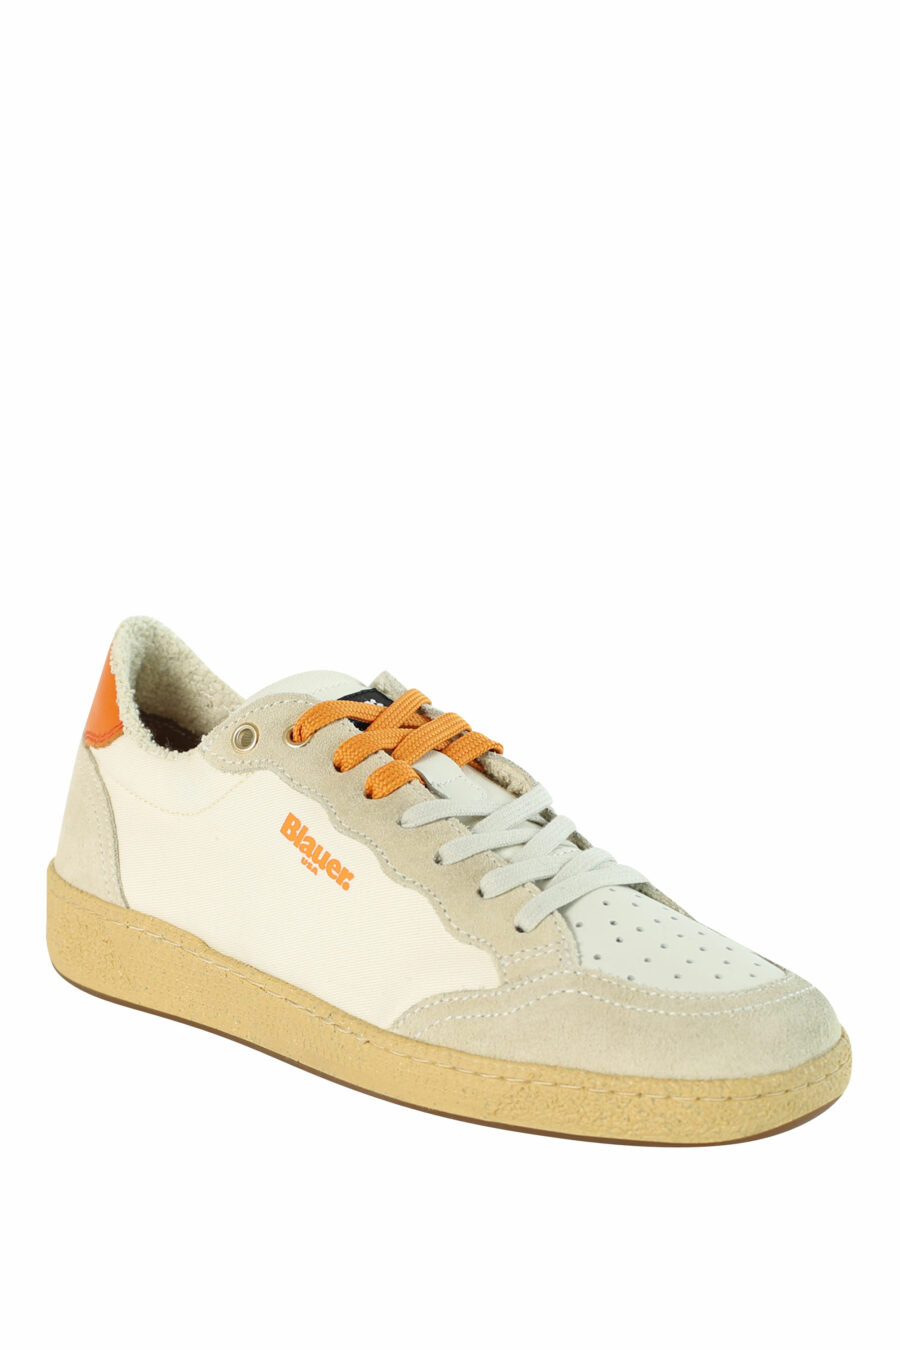 Zapatillas "MURRAY" blancas con detalles naranjas - 8058156497214 2